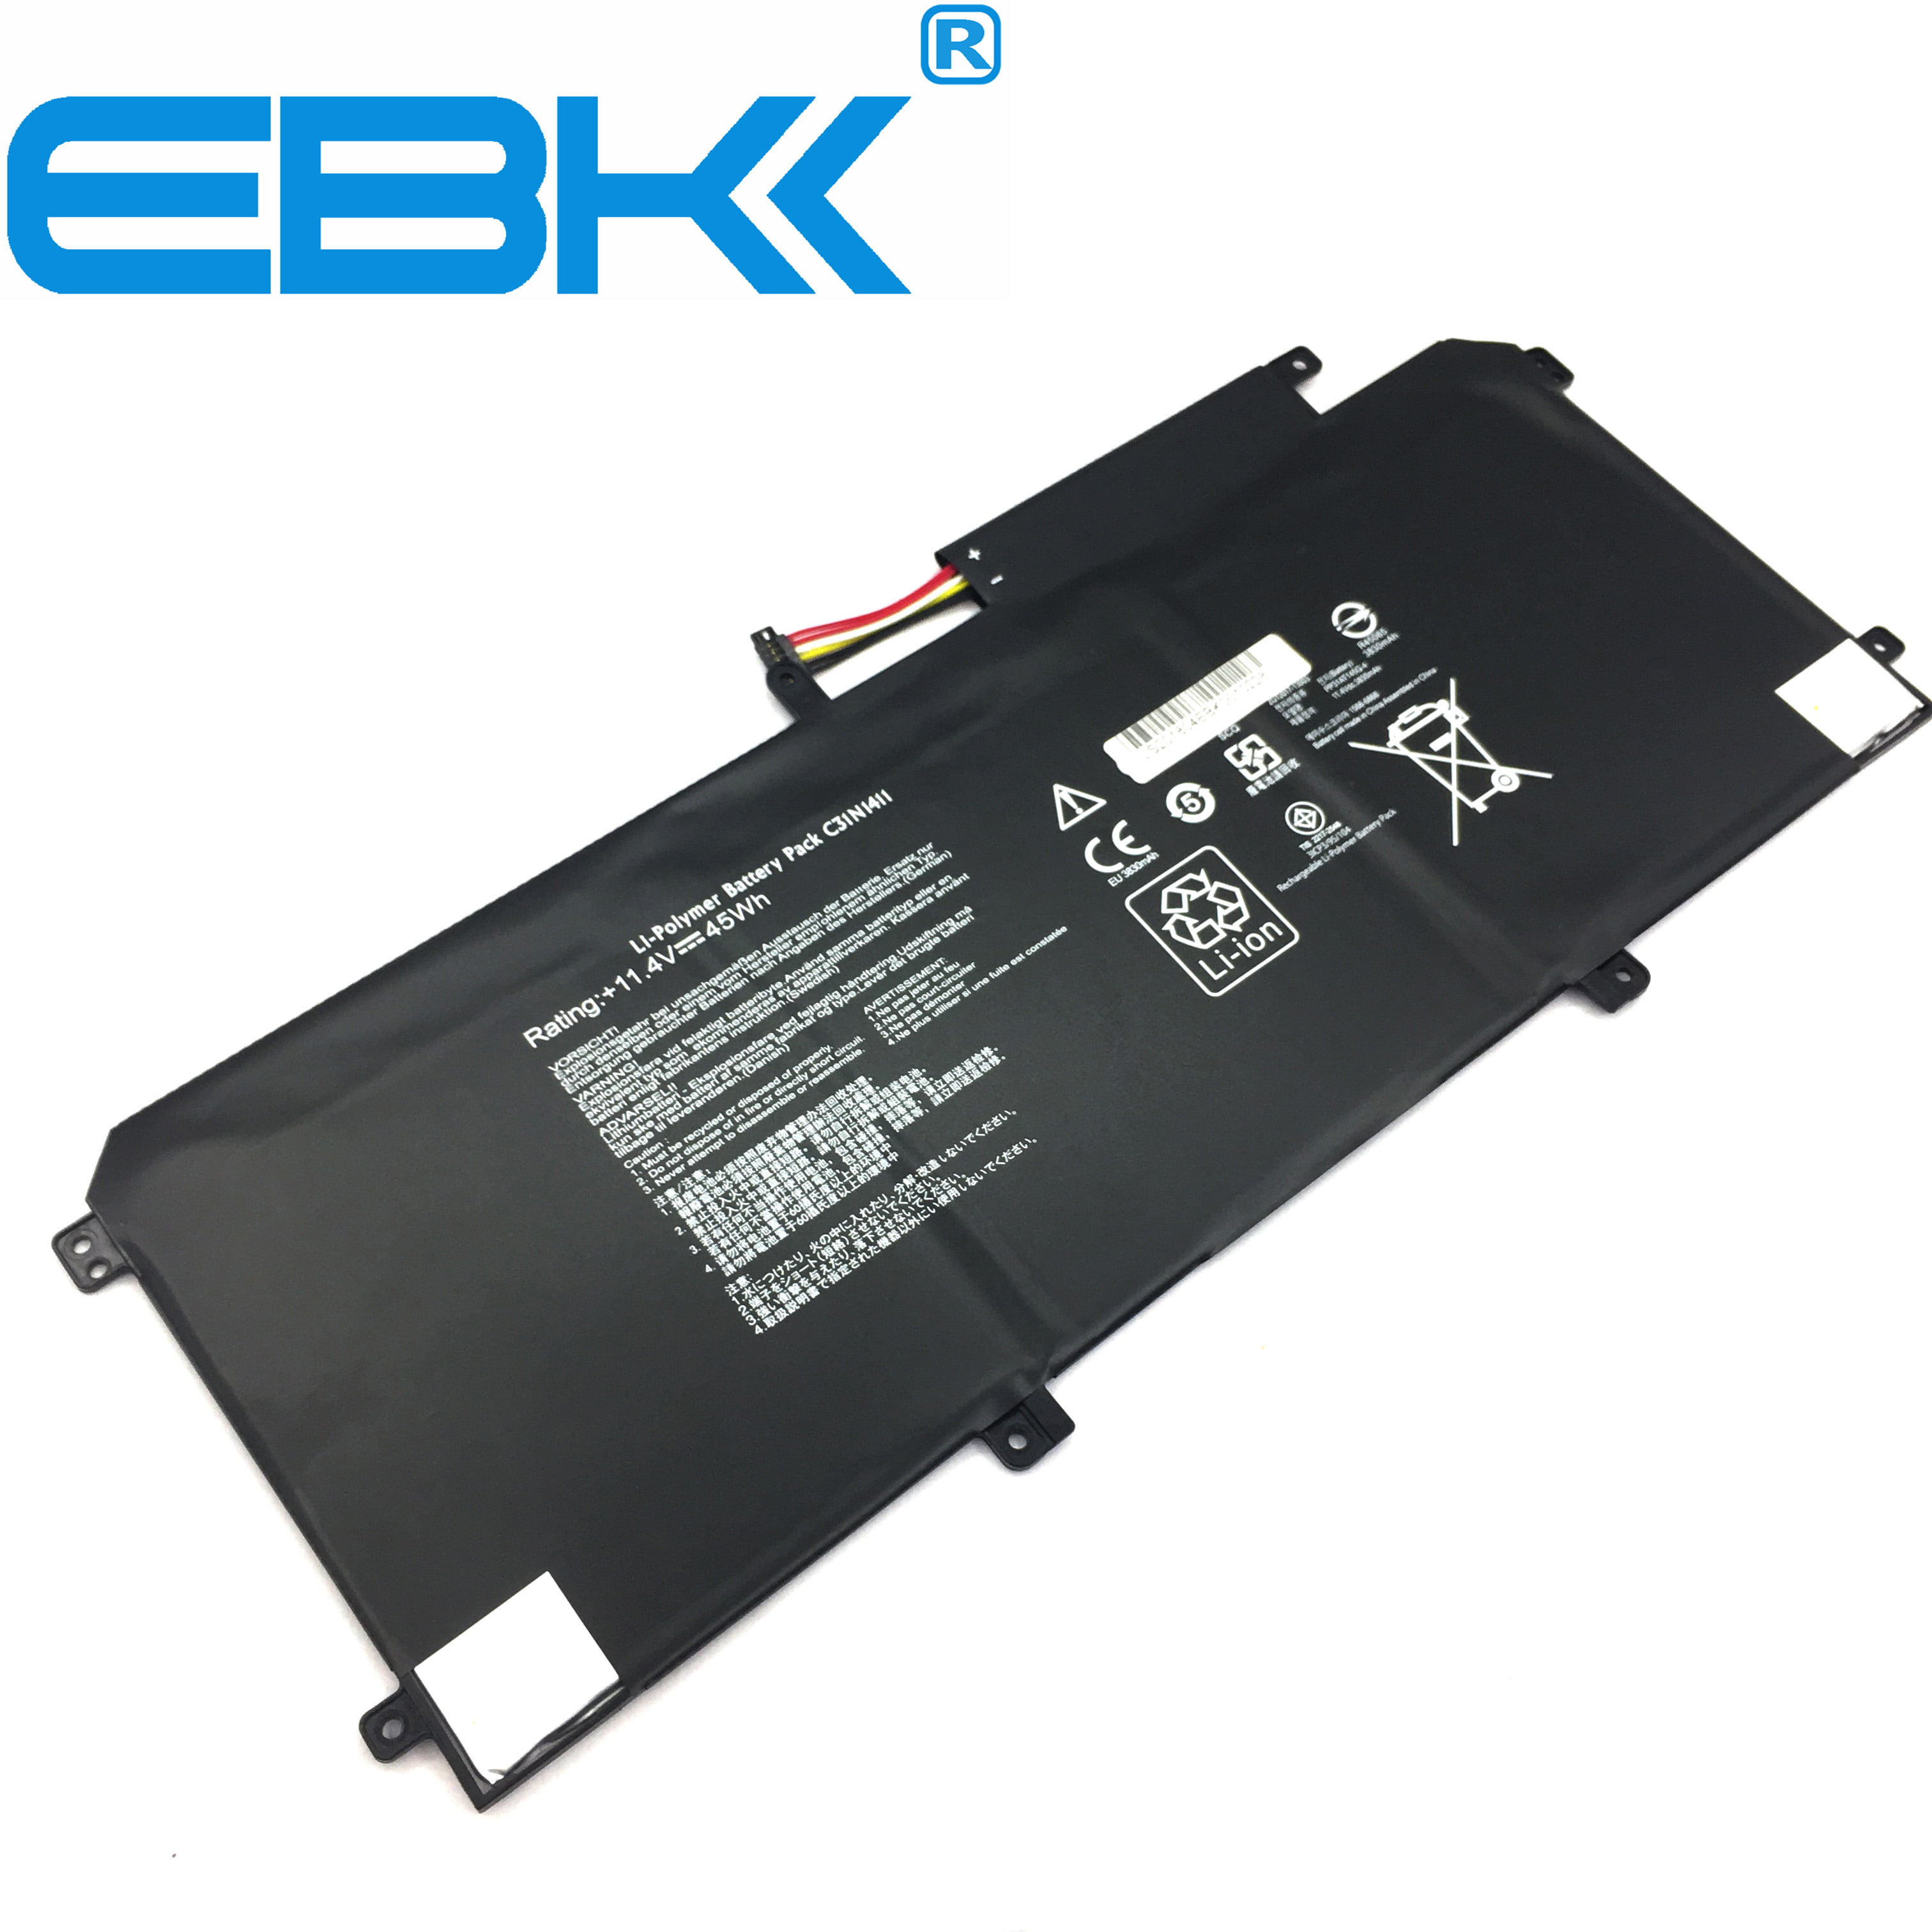 EBK C31N1411 Battery For Asus Zenbook U305 UX305 UX305F UX305C Series